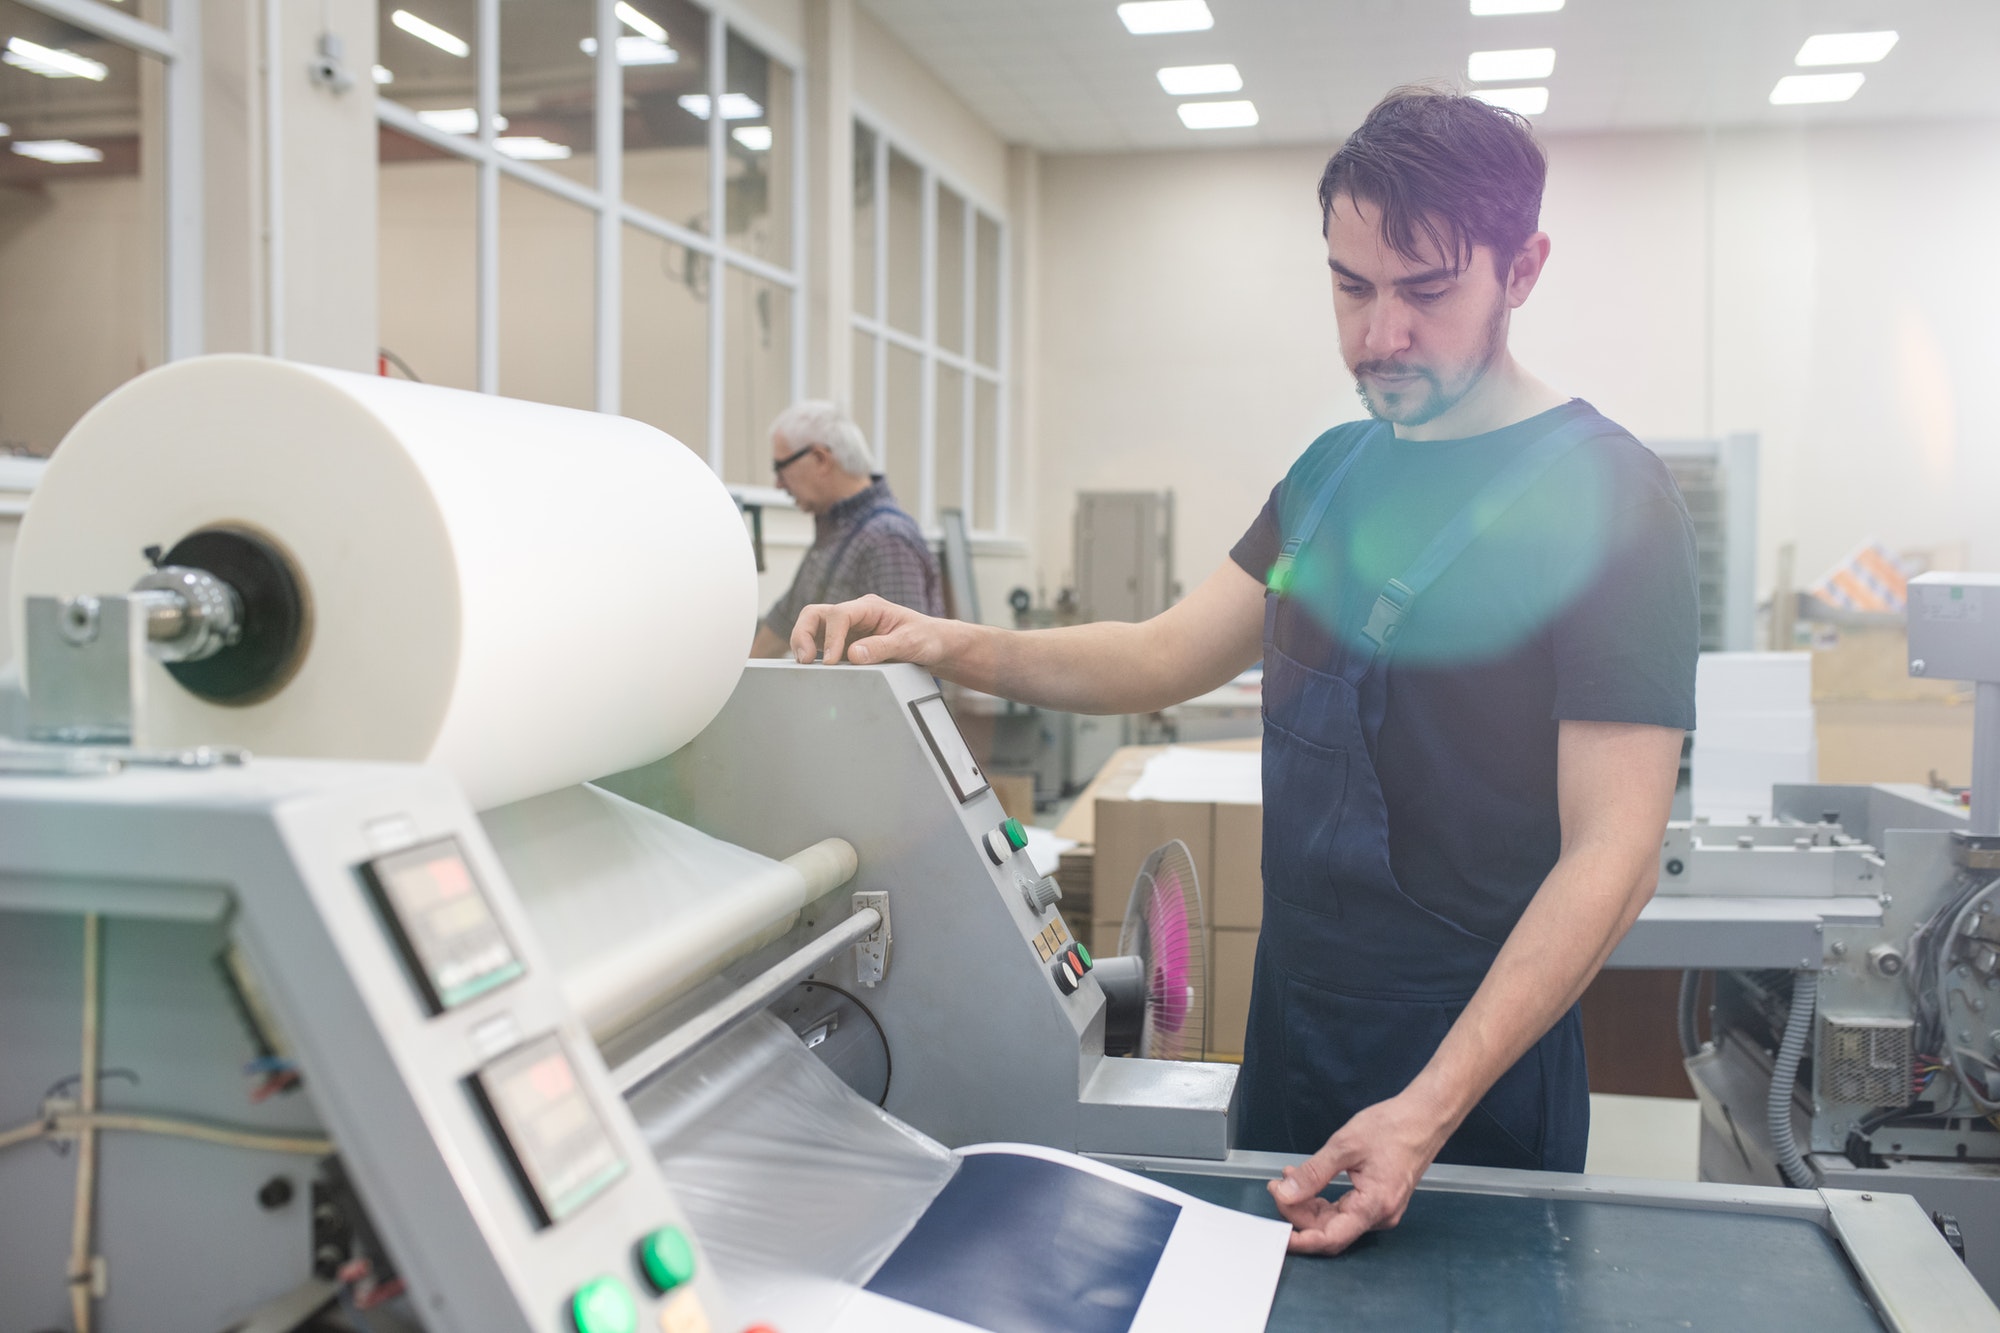 Operating printing press at factory